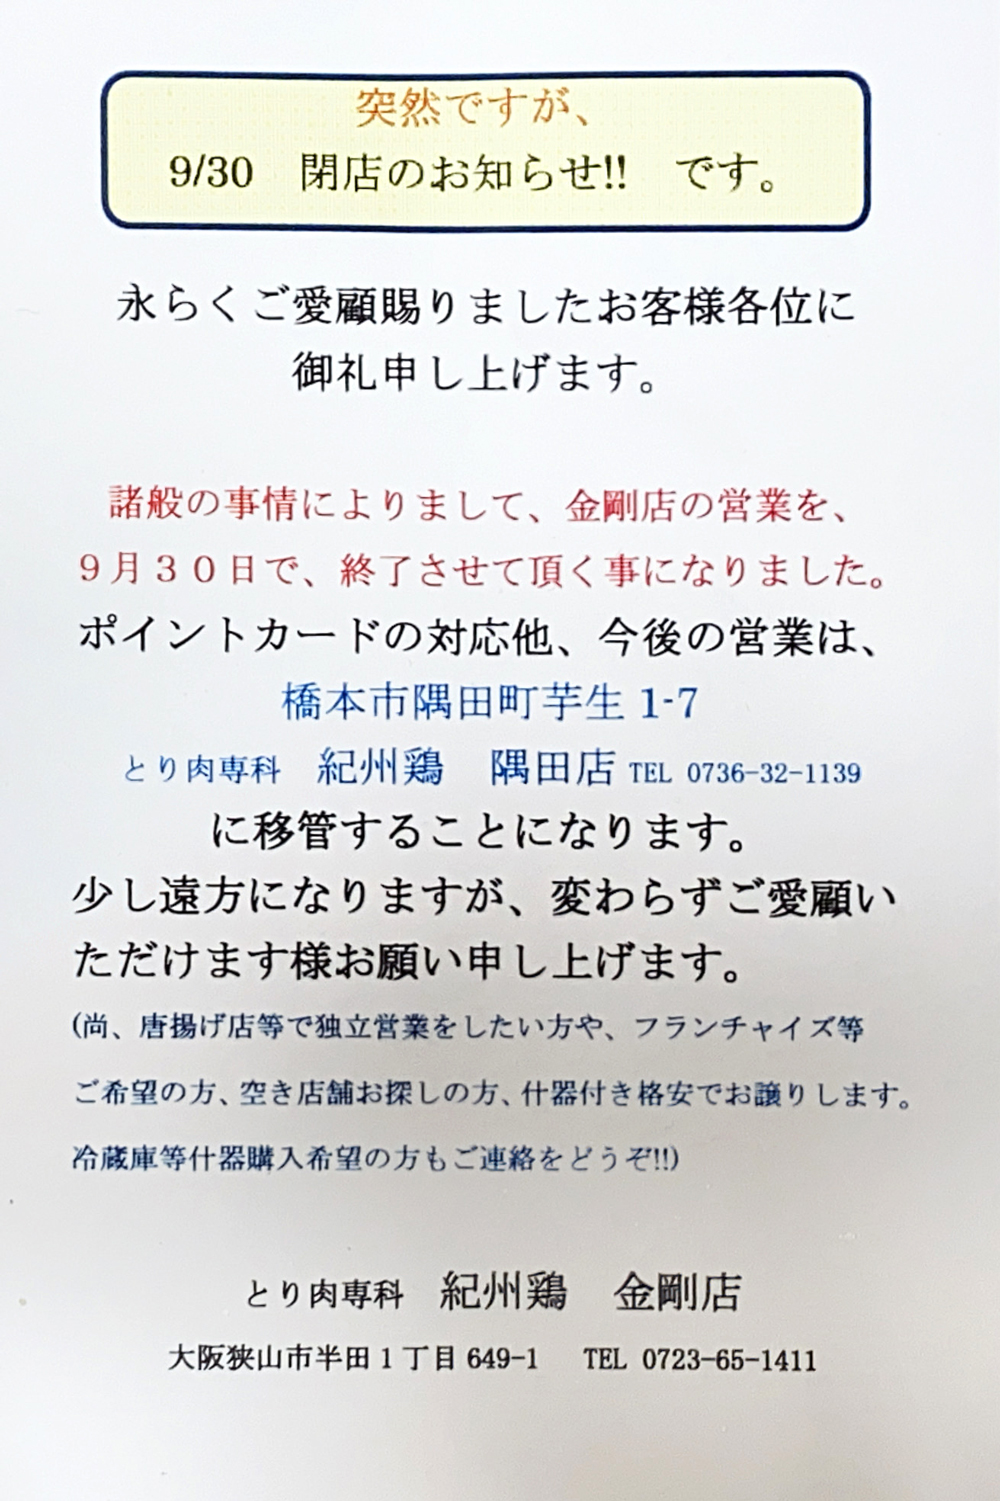 「紀州鶏-金剛店」が2022年9月30日で閉店